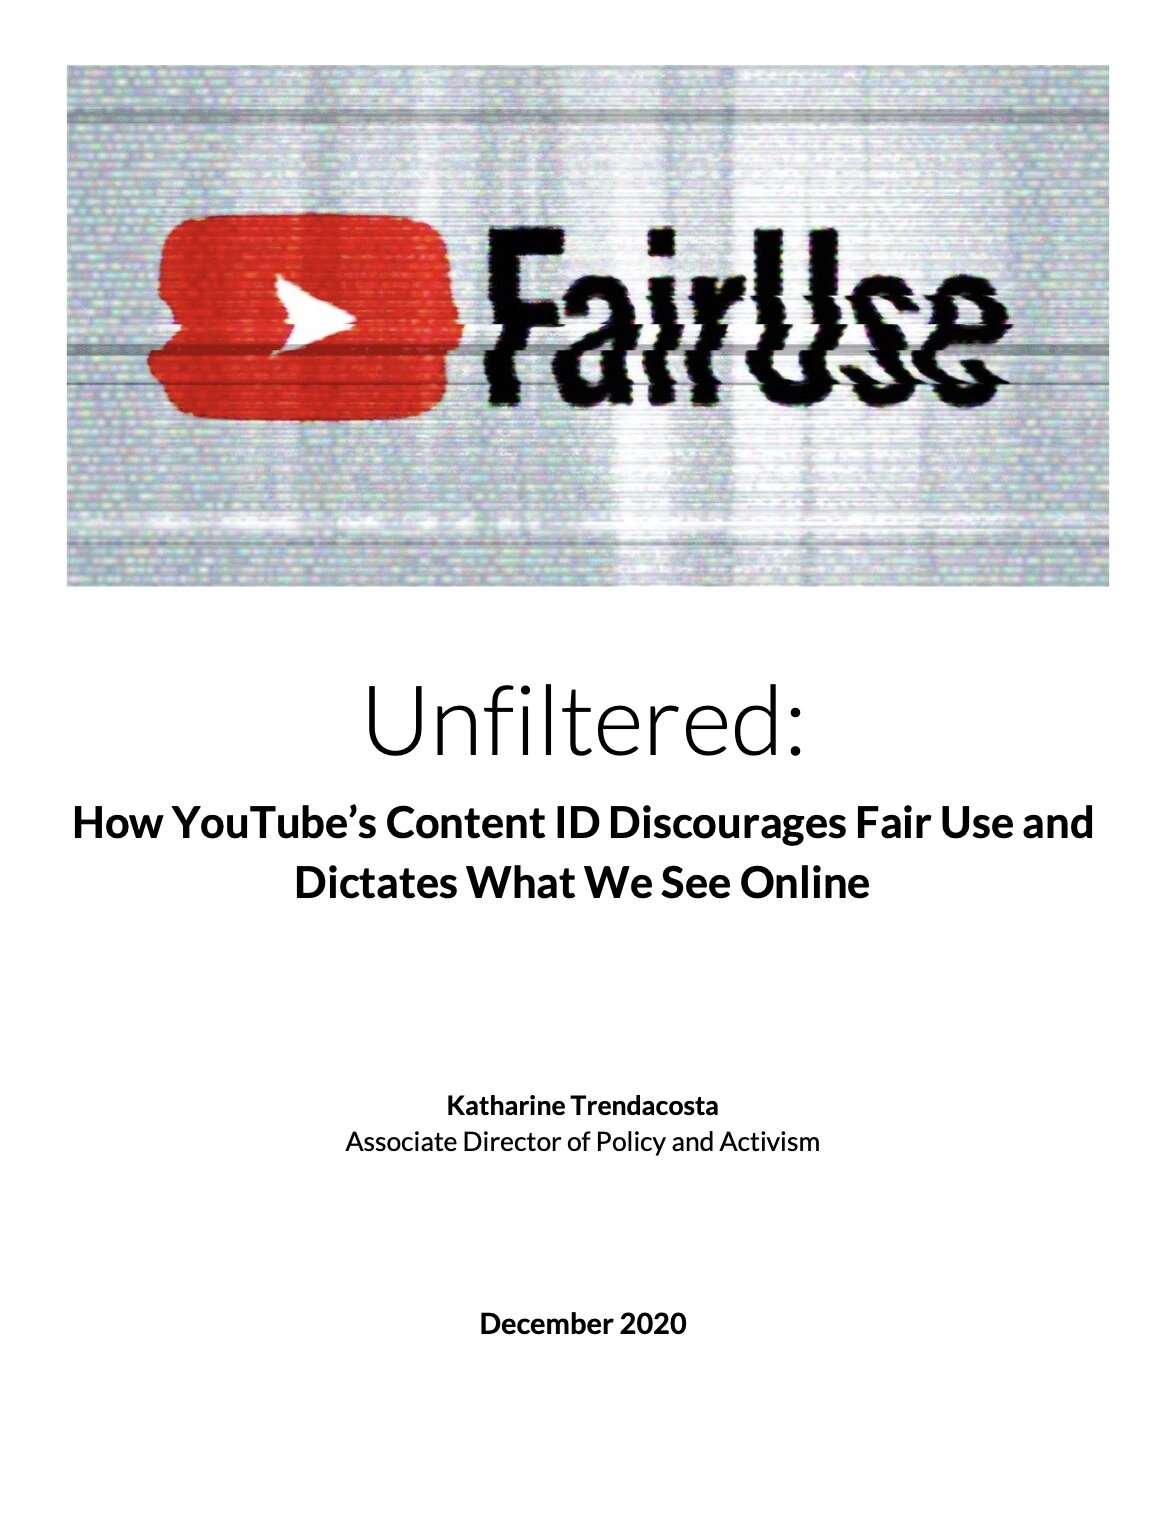 Youtube and Fair Use